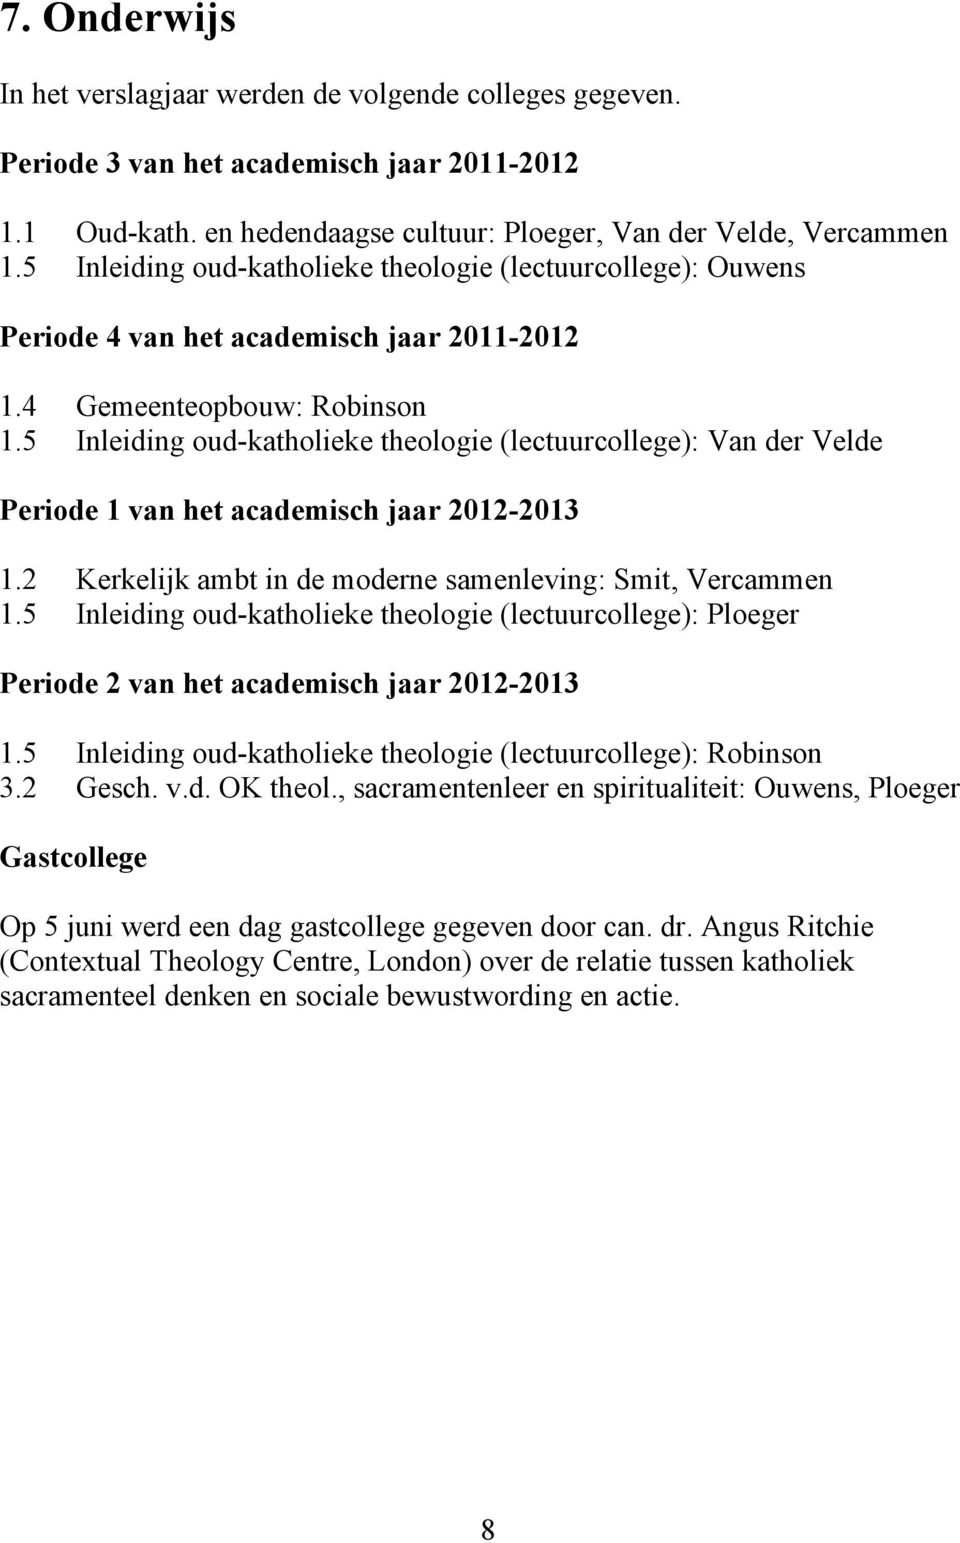 5 Inleiding oud-katholieke theologie (lectuurcollege): Van der Velde Periode 1 van het academisch jaar 2012-2013 1.2 Kerkelijk ambt in de moderne samenleving: Smit, Vercammen 1.